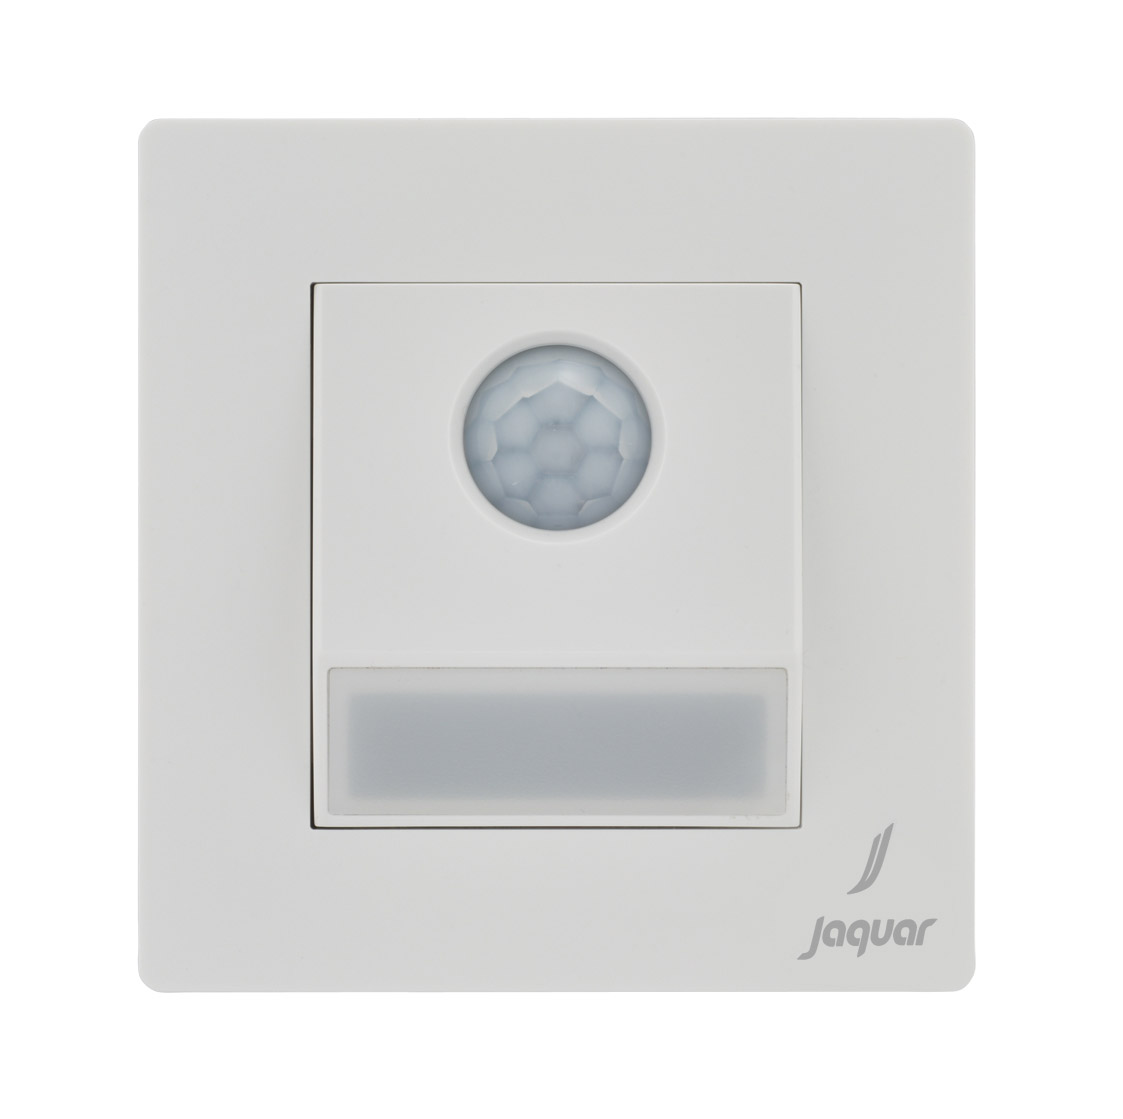 Sensor Lights for Bathroom, Motion Sensor for Bathroom Lights from Jaquar